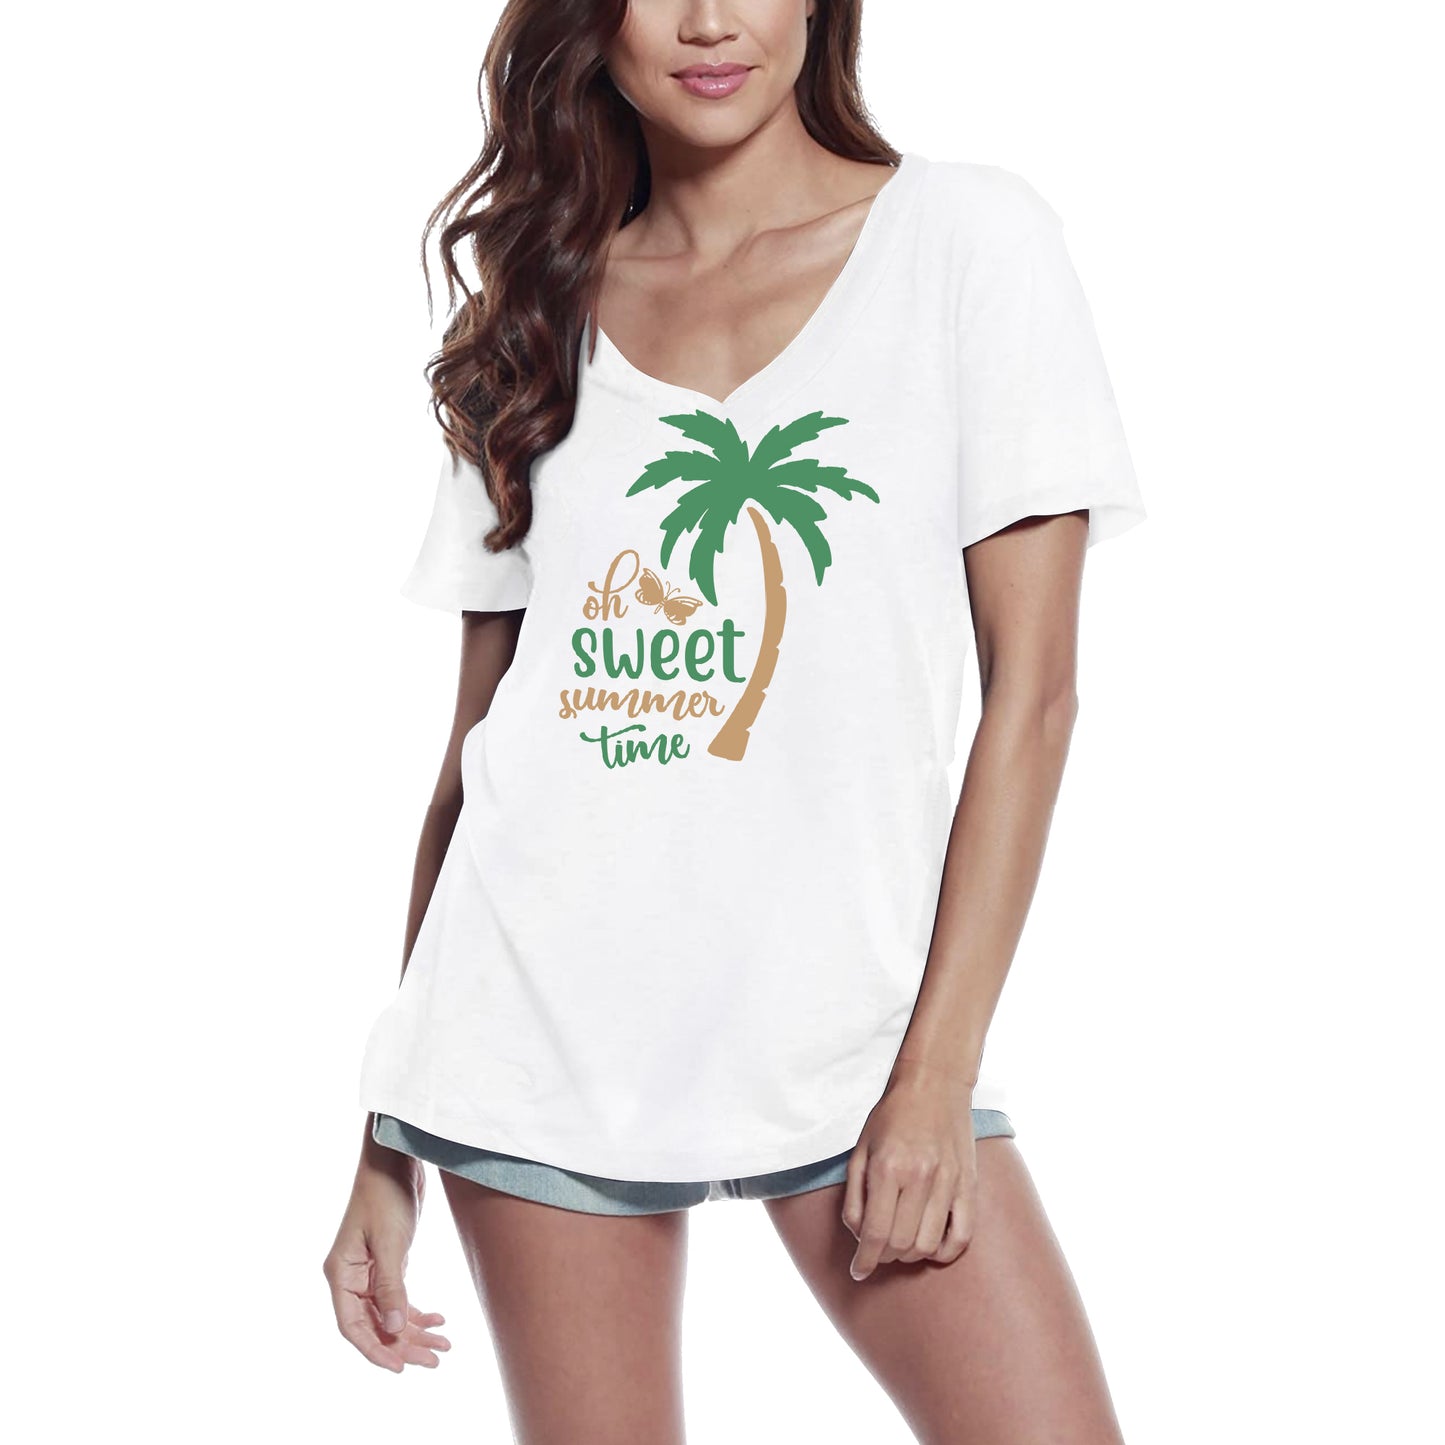 ULTRABASIC Women's T-Shirt Sweet Summer Time - Palm Tree Short Sleeve Tee Shirt Tops